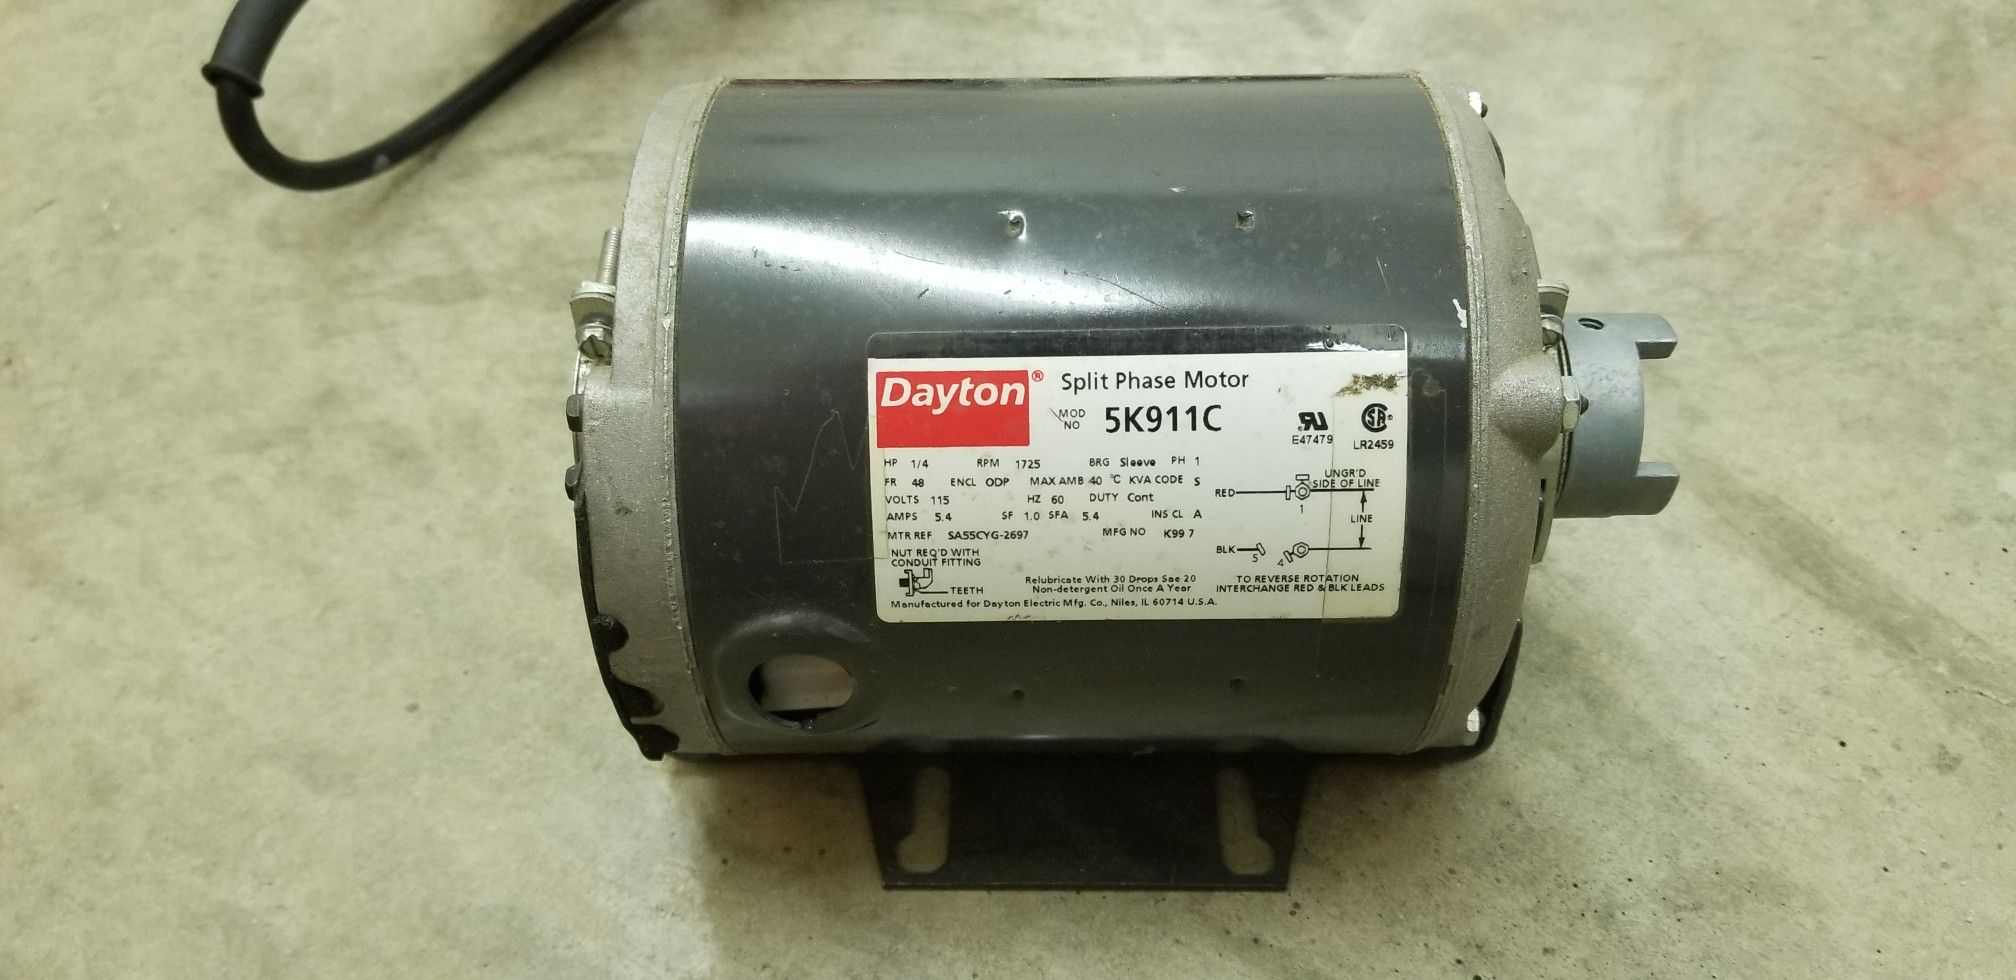 Electric Dayton 110 motor